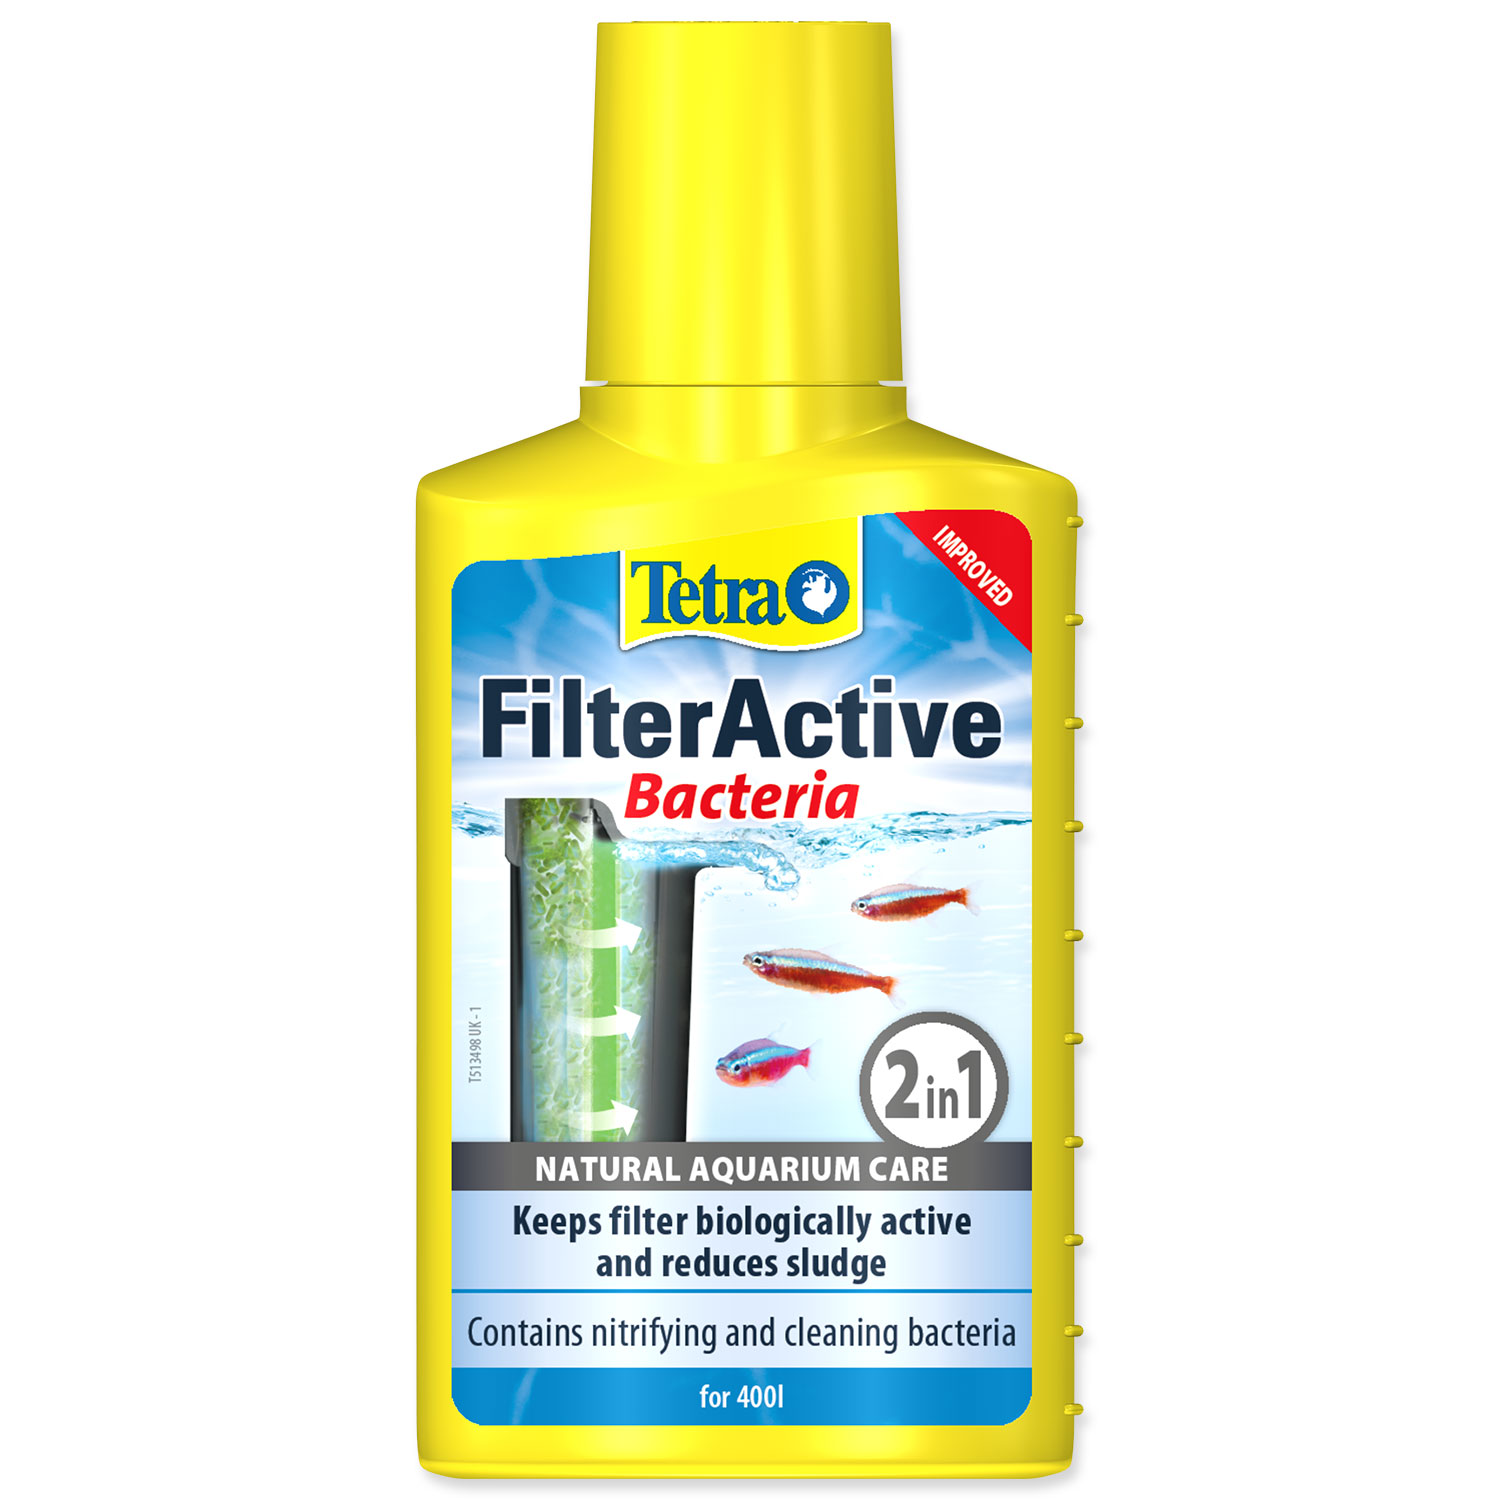 TETRA FilterActive